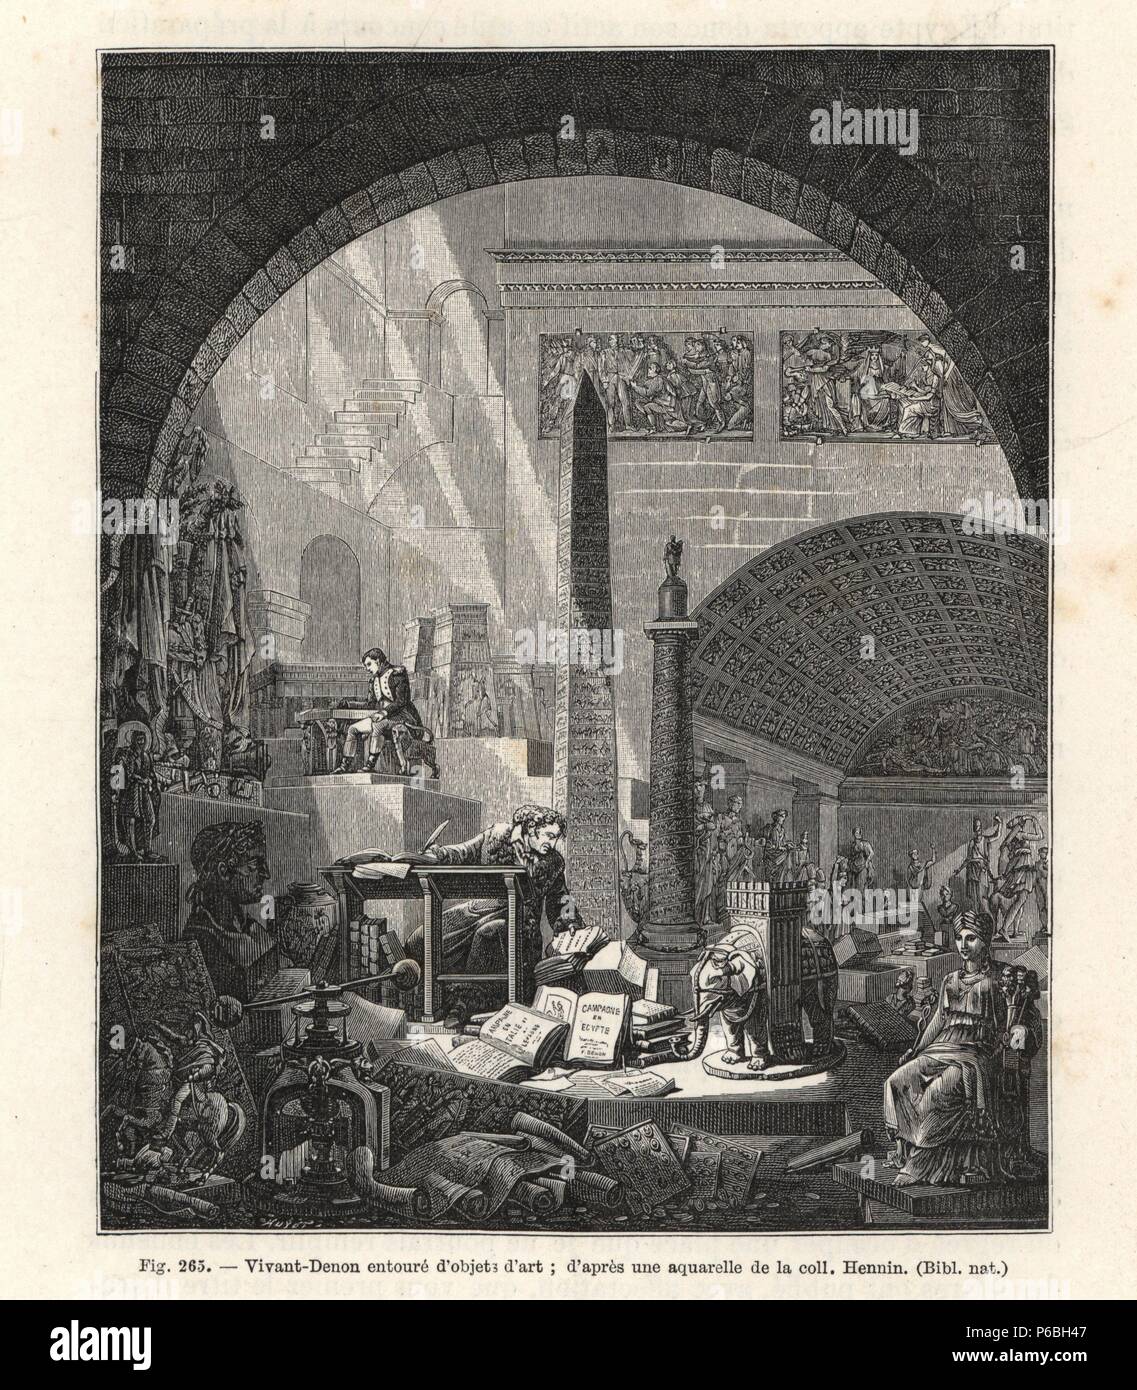 Dominique Vivant, Baron de Denon (1747-1825), travaillant sur la collection pour le musée Napoléon (plus tard le Louvre). Il est assis à un bureau dans une cave pleine d'obélisques, de statues, d'objets d'art, des livres et des papyrus. Gravure de Paul Lacroix's style directoire, Consulat et Empire,' Paris, 1884. Banque D'Images